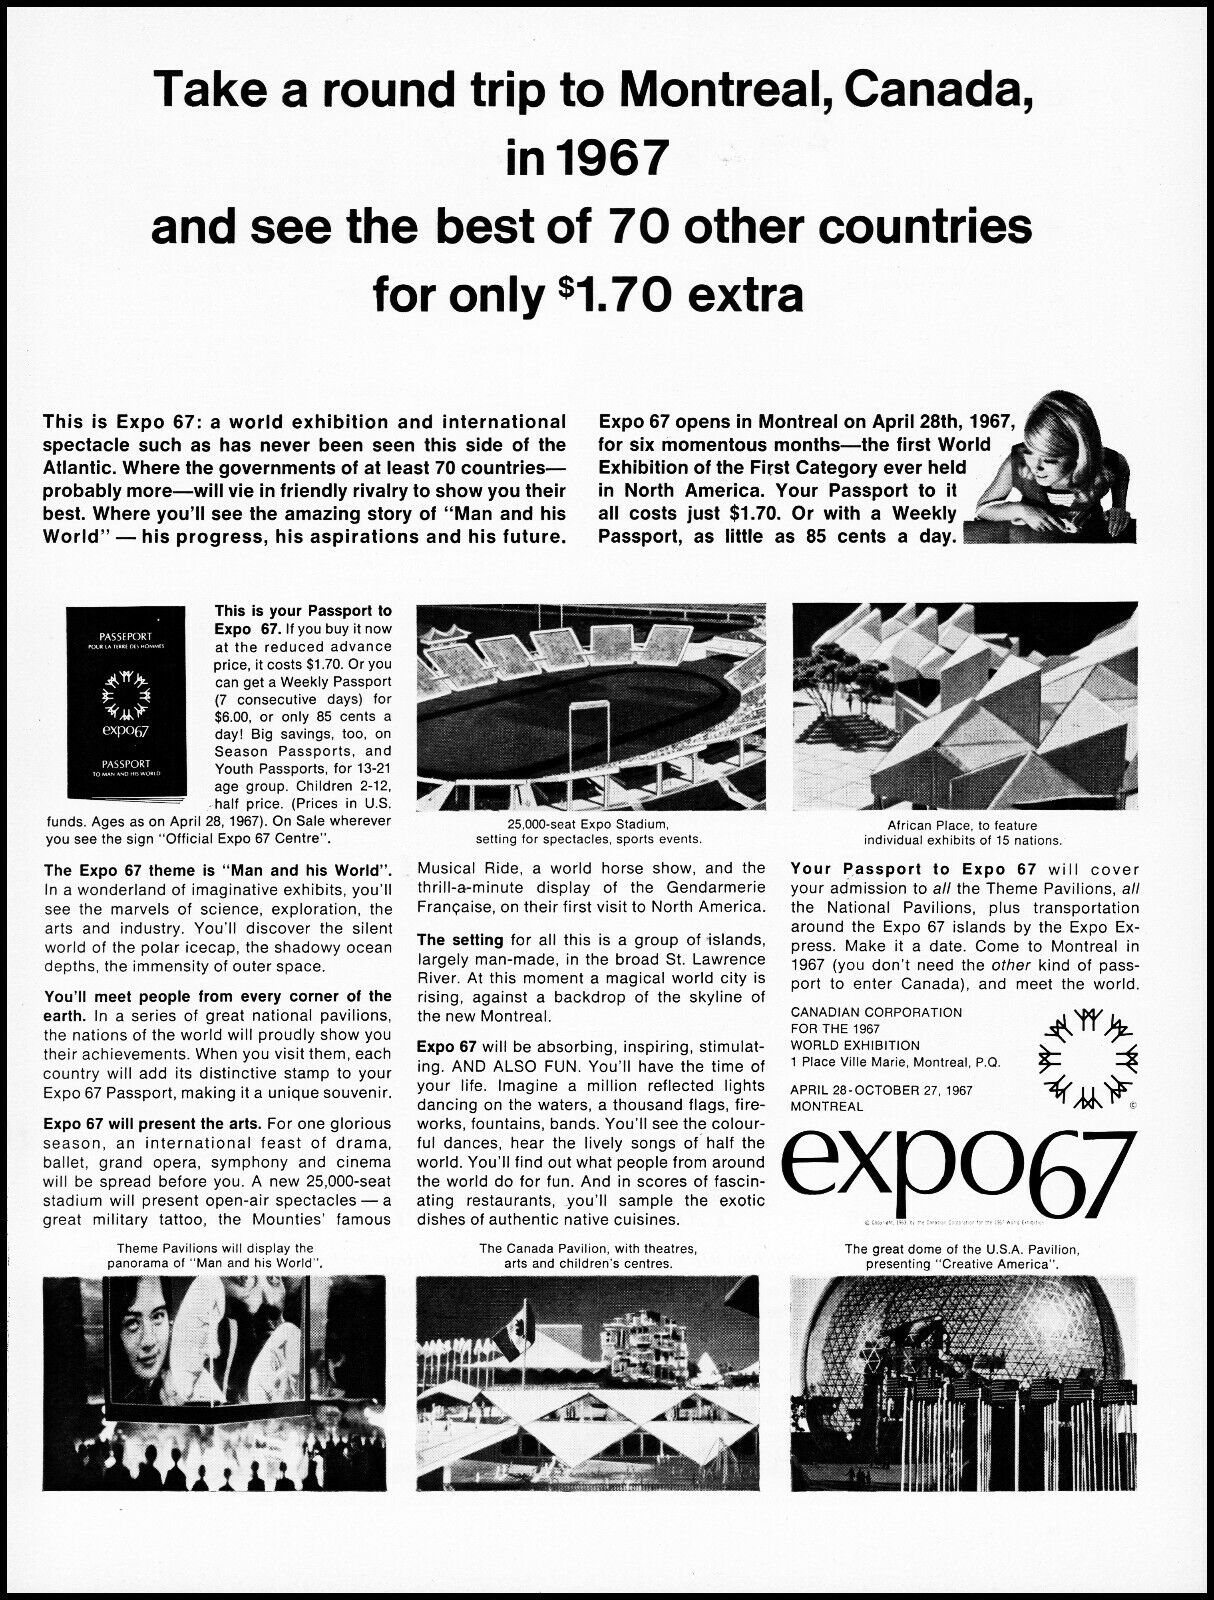 1966 Expo 67 Montreal Canada World Exhibition 1967 retro photo print ad LA10